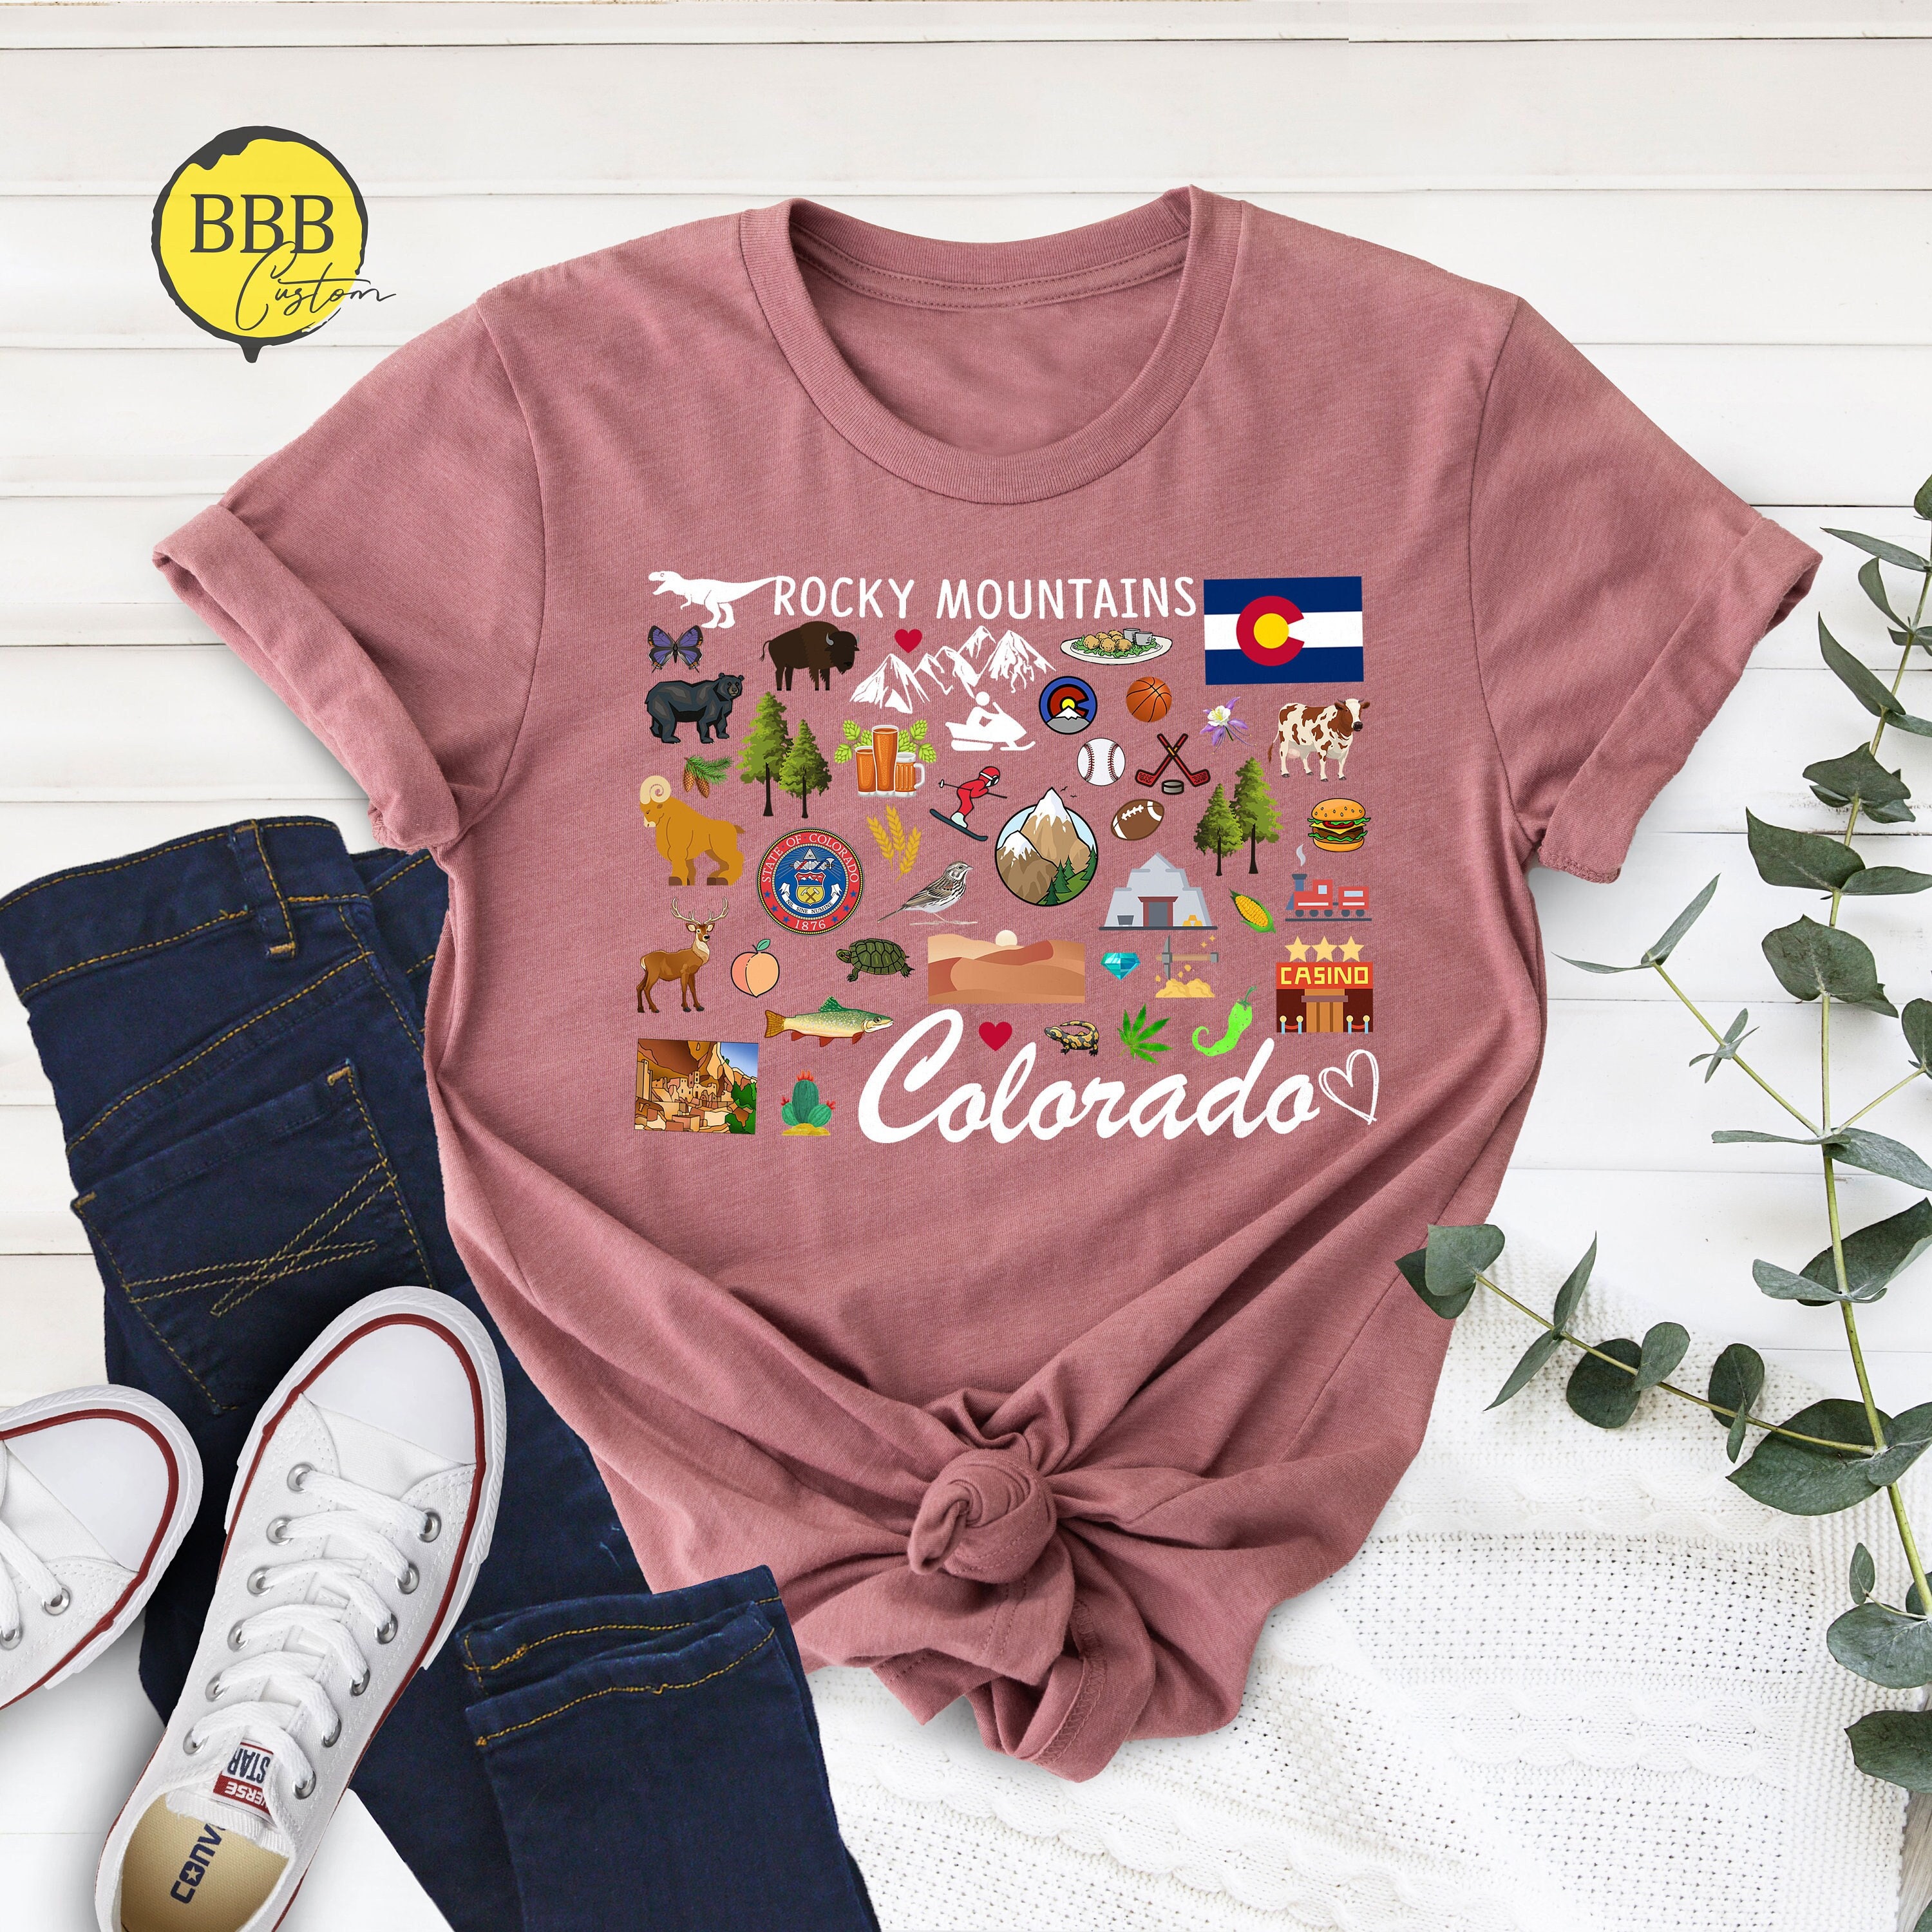 Colorado State Shirt, USA States Shirt, Colorado Lover Shirt, Colorado Map Shirts